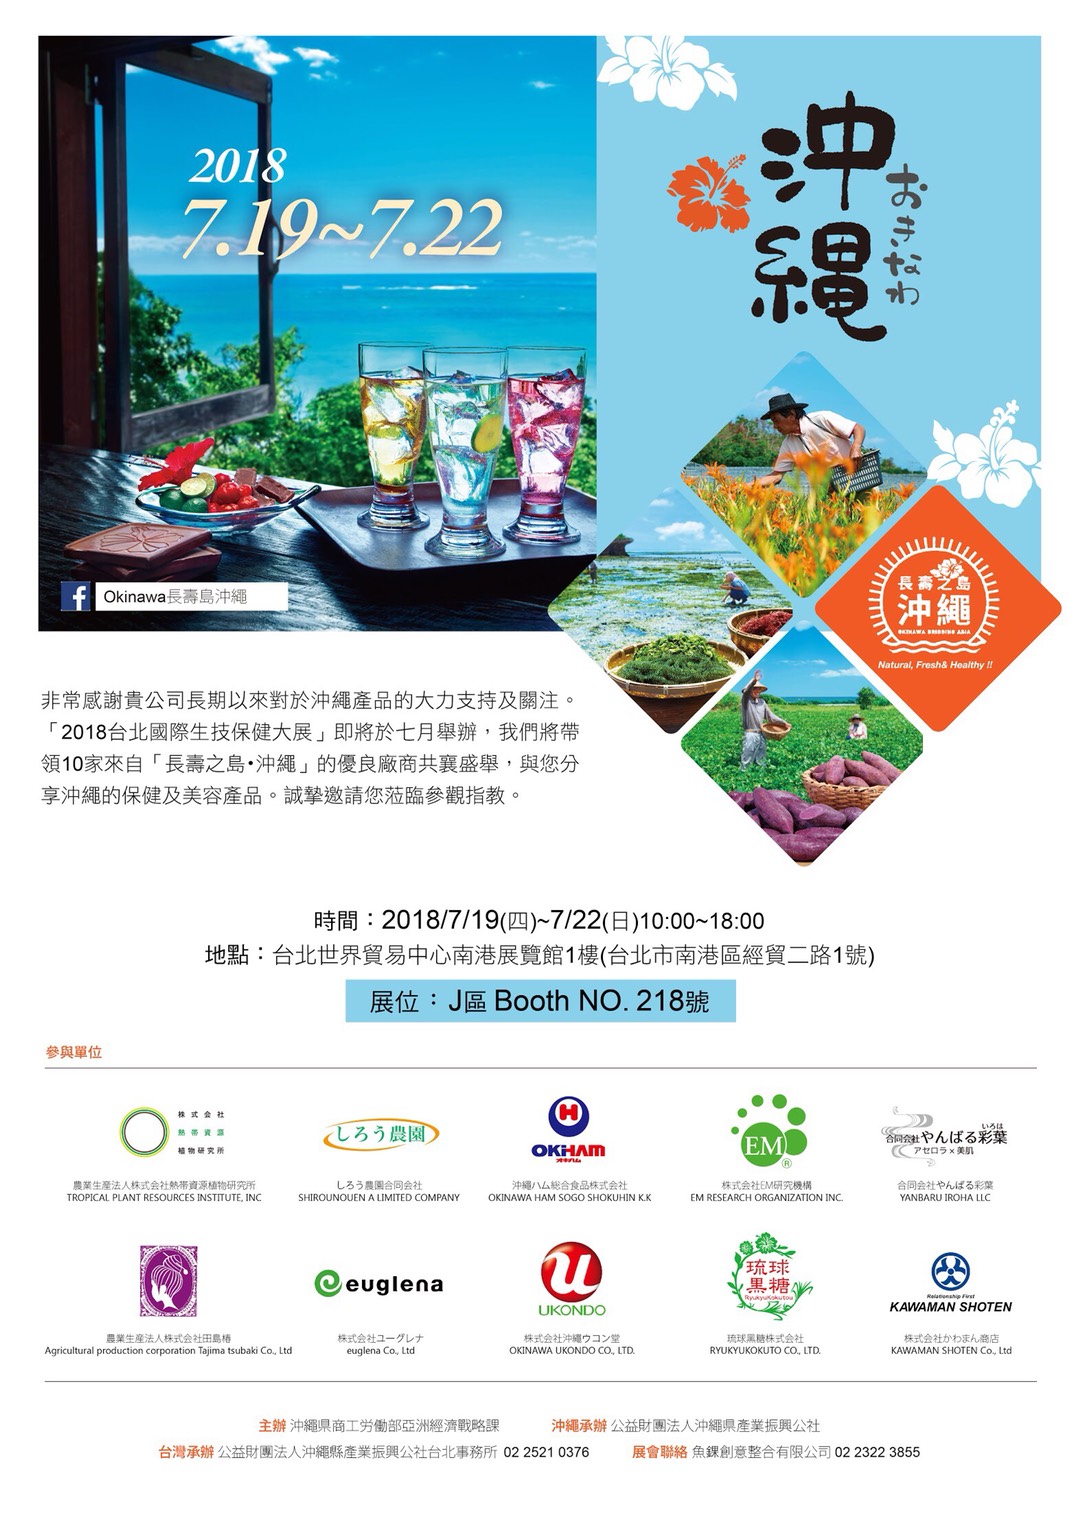 Bio Taiwan 2018 - アジア最大のバイオテクノロジーイベント開催中！